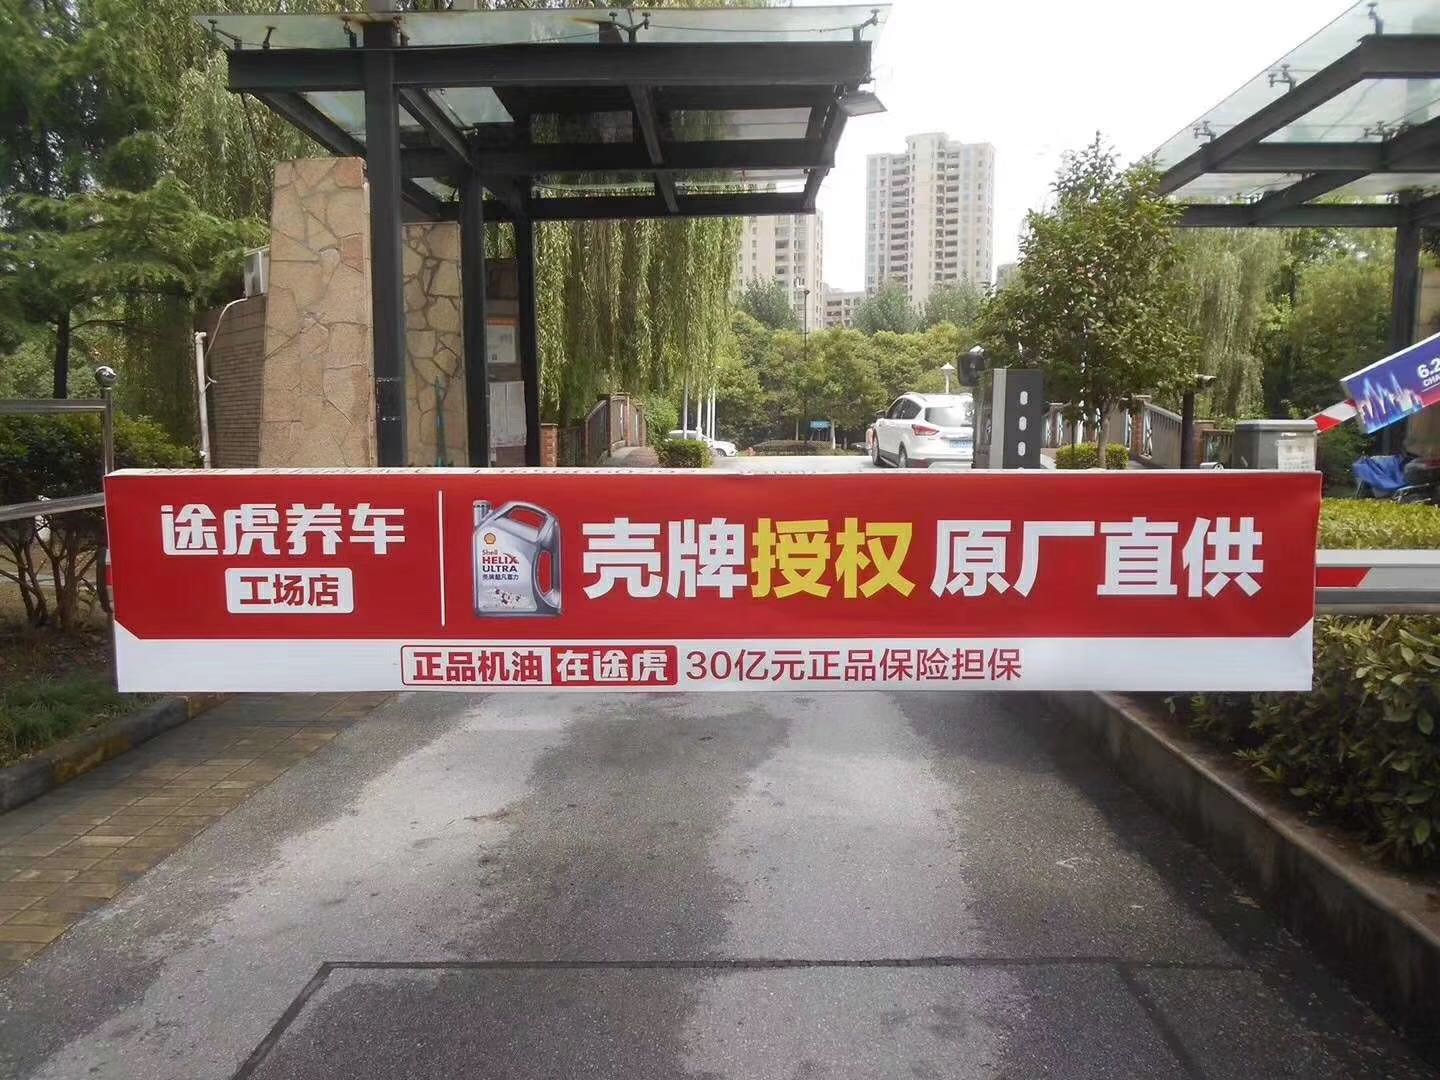 震撼发布上海道杆广告 小区媒体投放